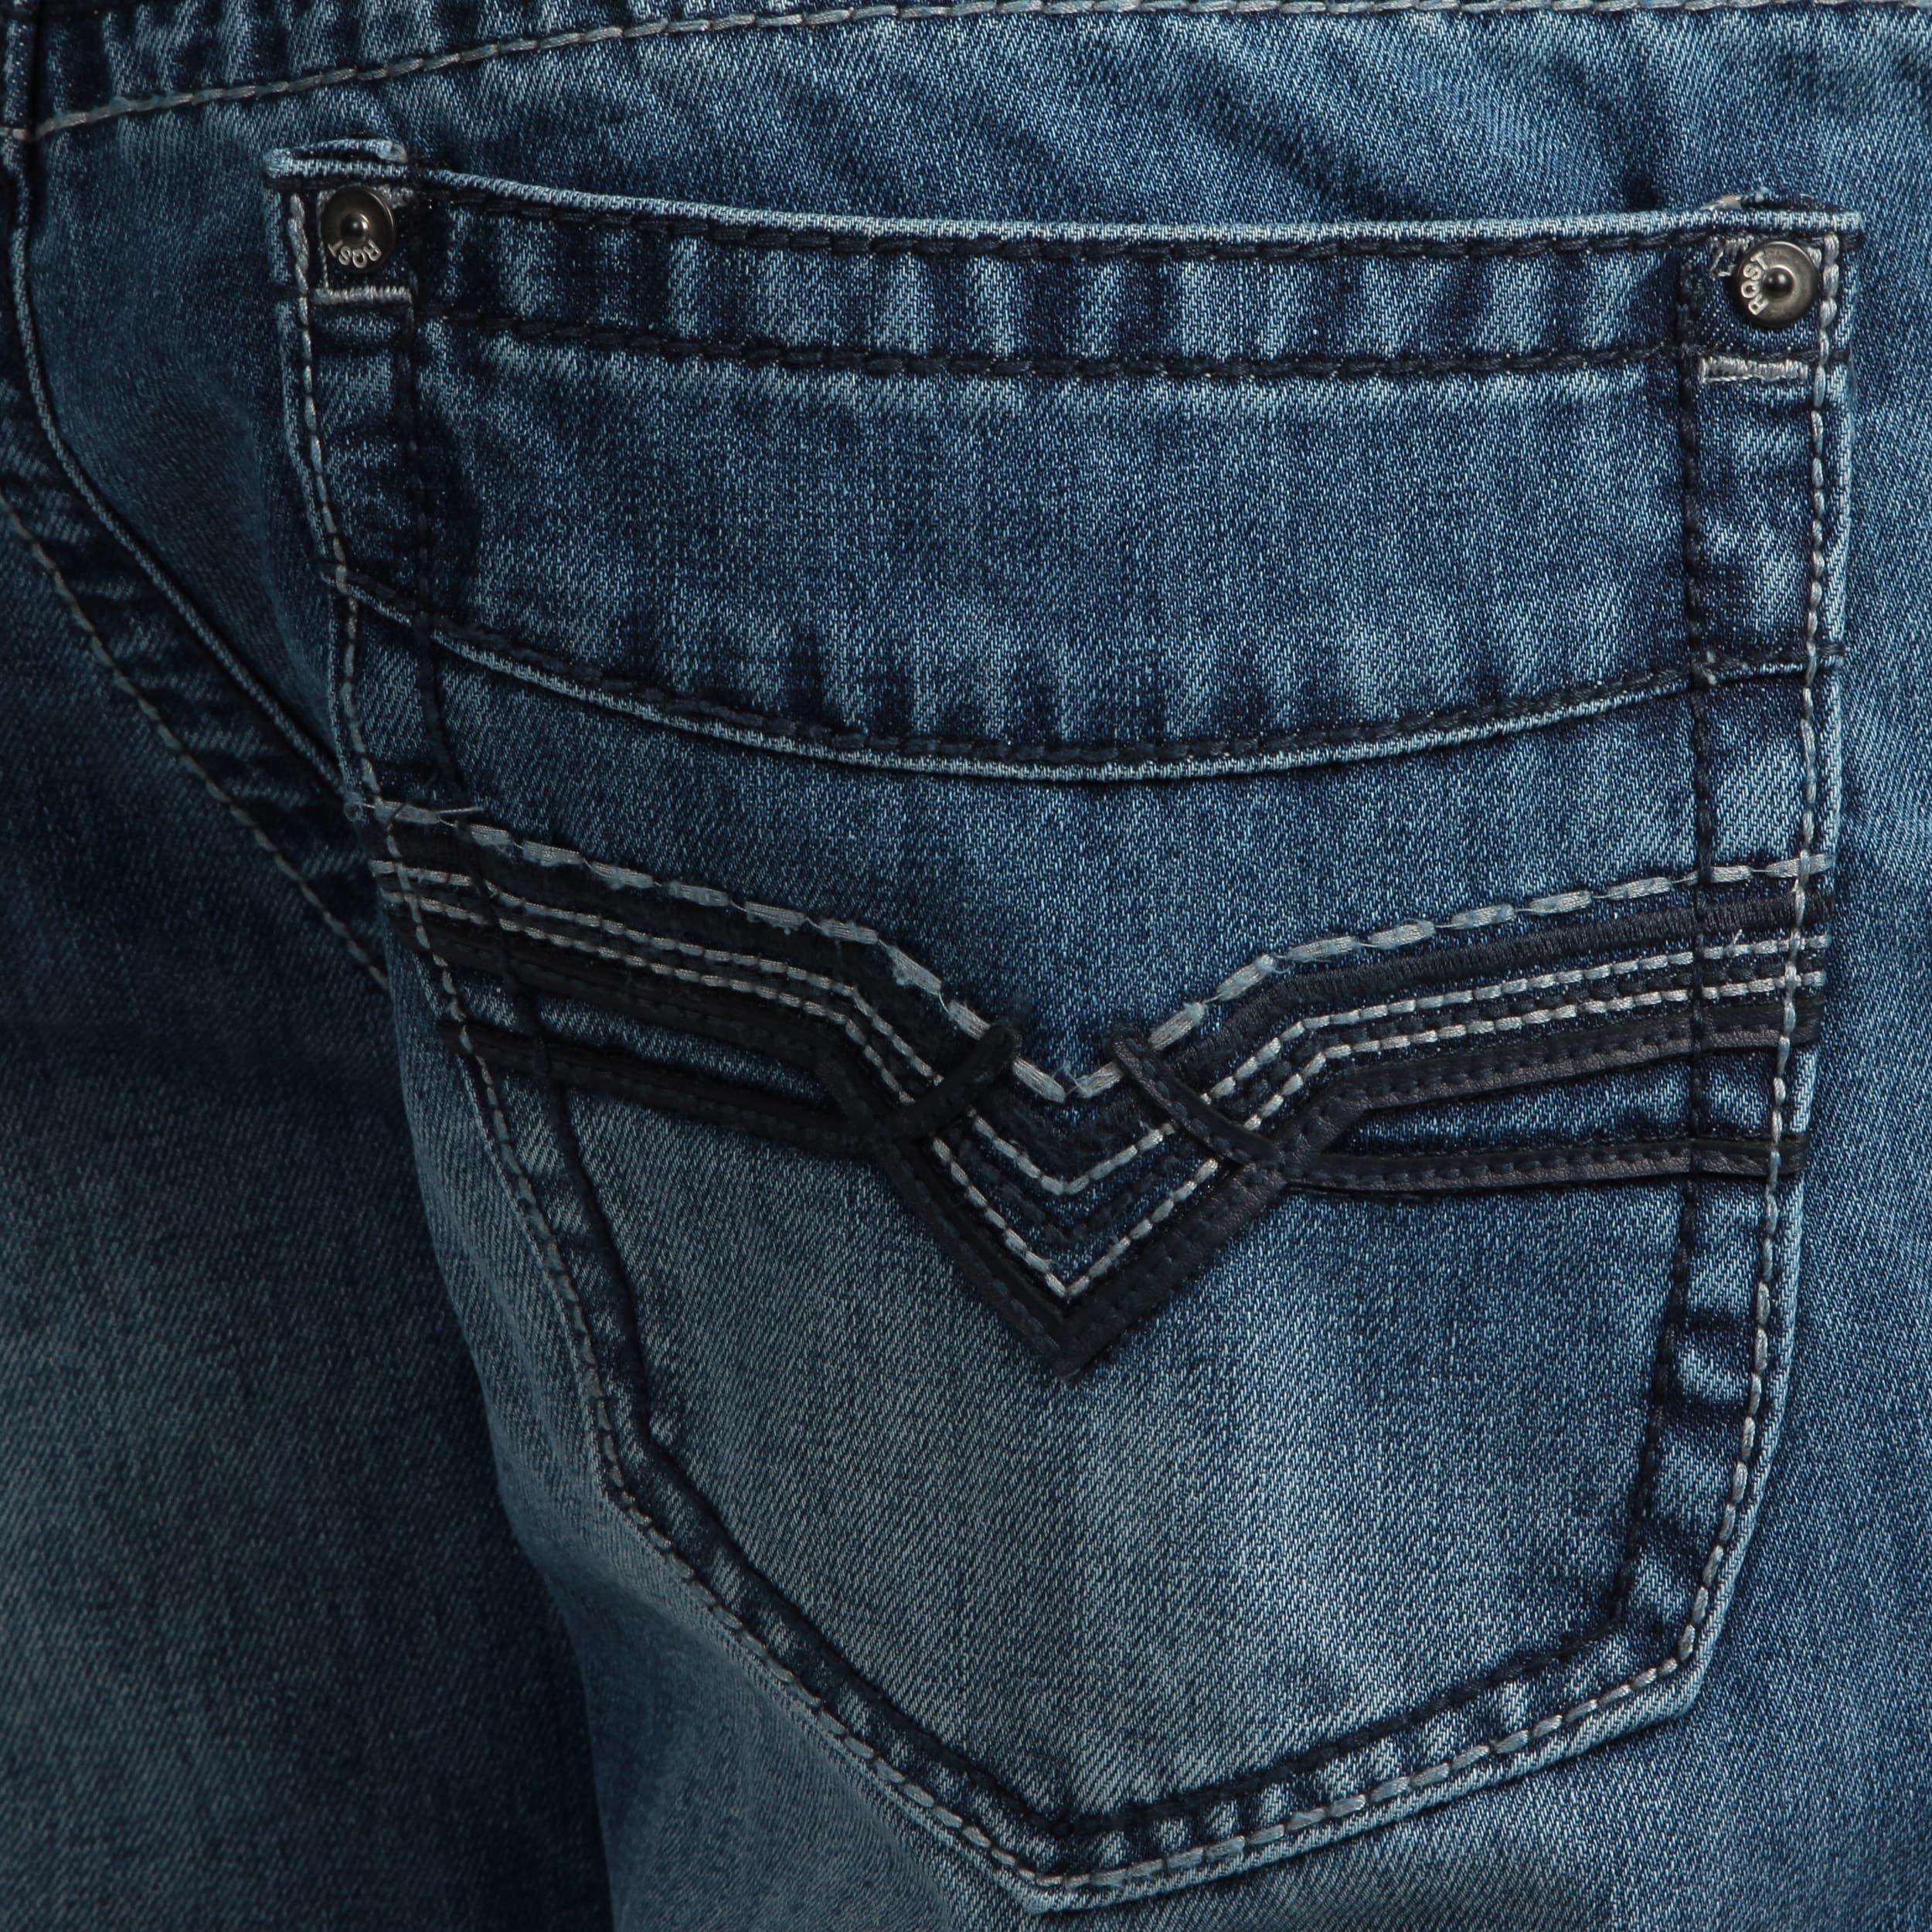 fashion nova cut up jeans